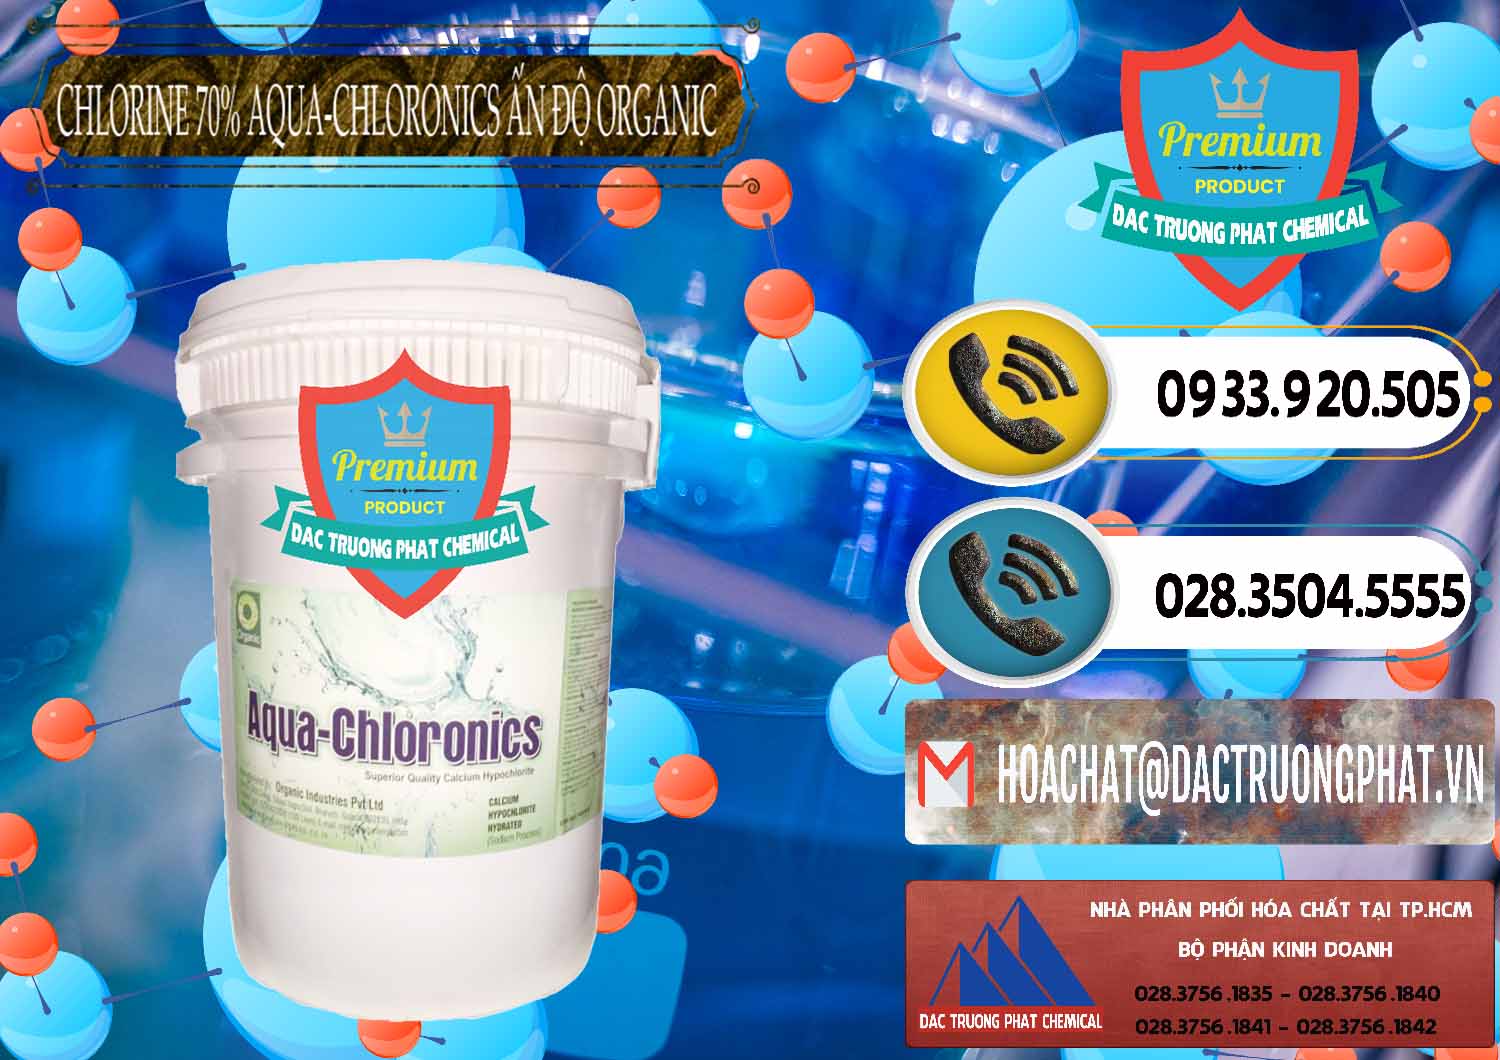 Chuyên bán ( phân phối ) Chlorine – Clorin 70% Aqua-Chloronics Ấn Độ Organic India - 0211 - Nơi chuyên kinh doanh - phân phối hóa chất tại TP.HCM - hoachatdetnhuom.vn